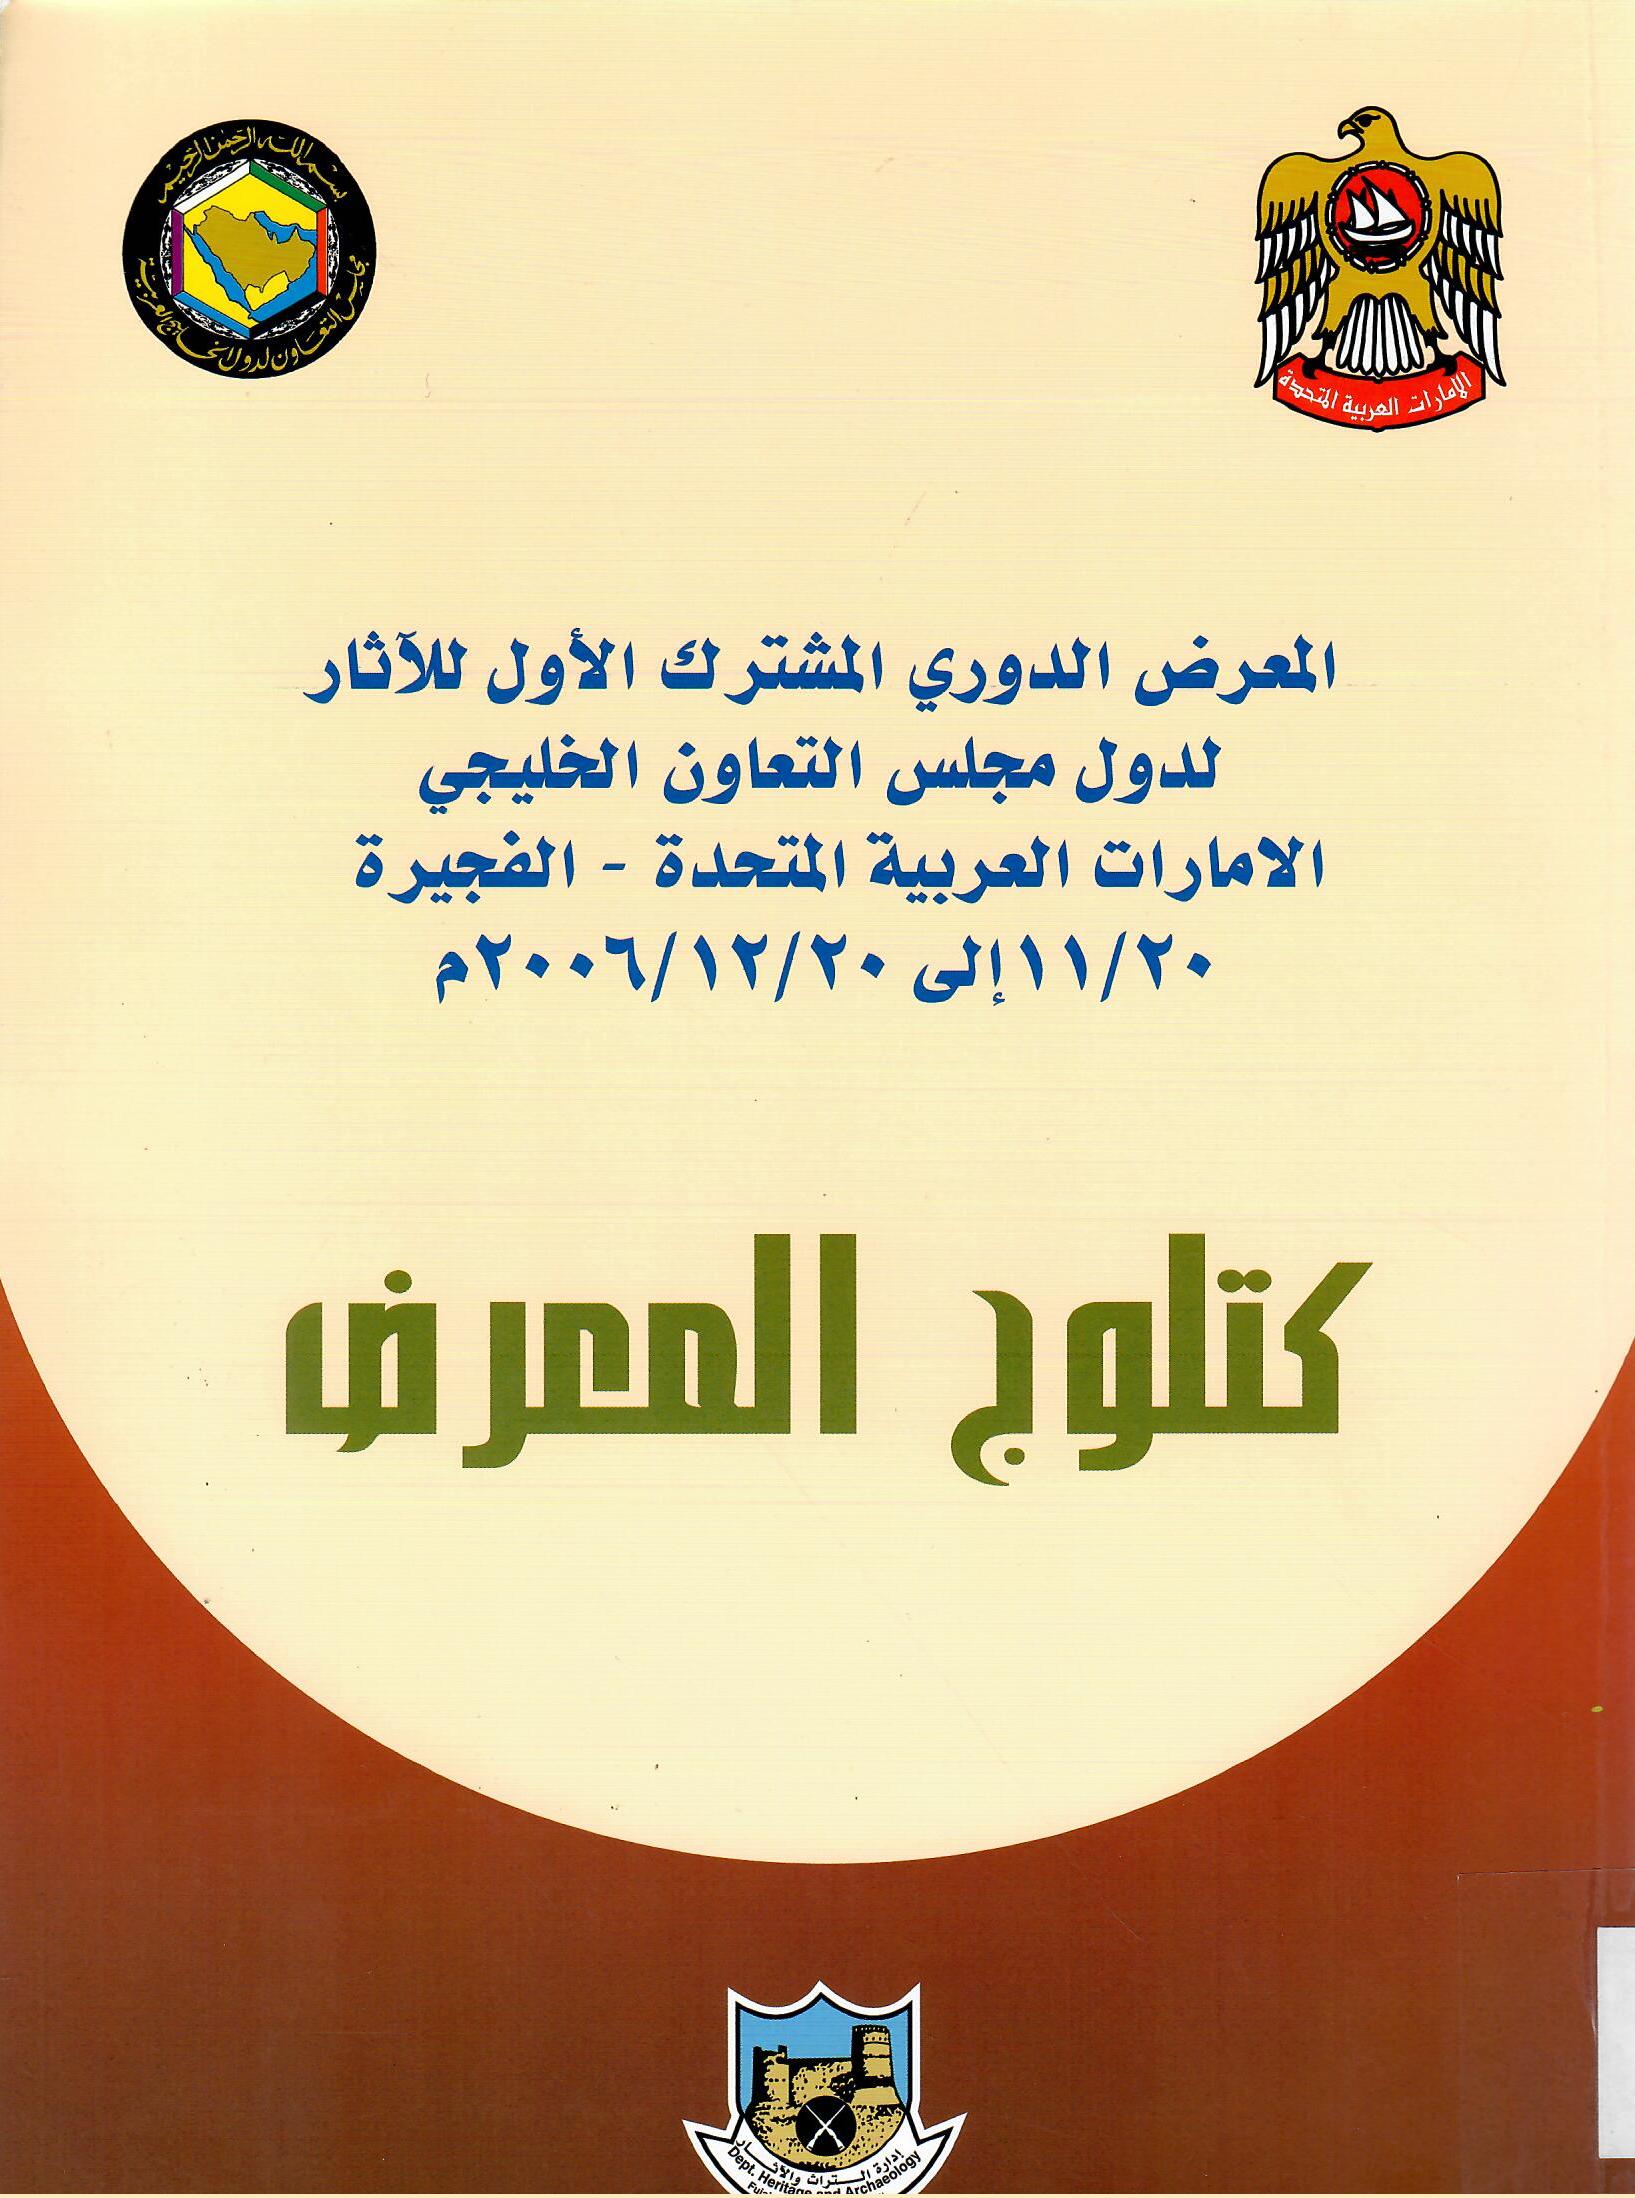 المعرض الدوري المشترك الأول للآثار لدول مجلس التعاون الخليجي الامارات العربية المتحدة - الفجيرة 20/11 إلى 20/12/2006م